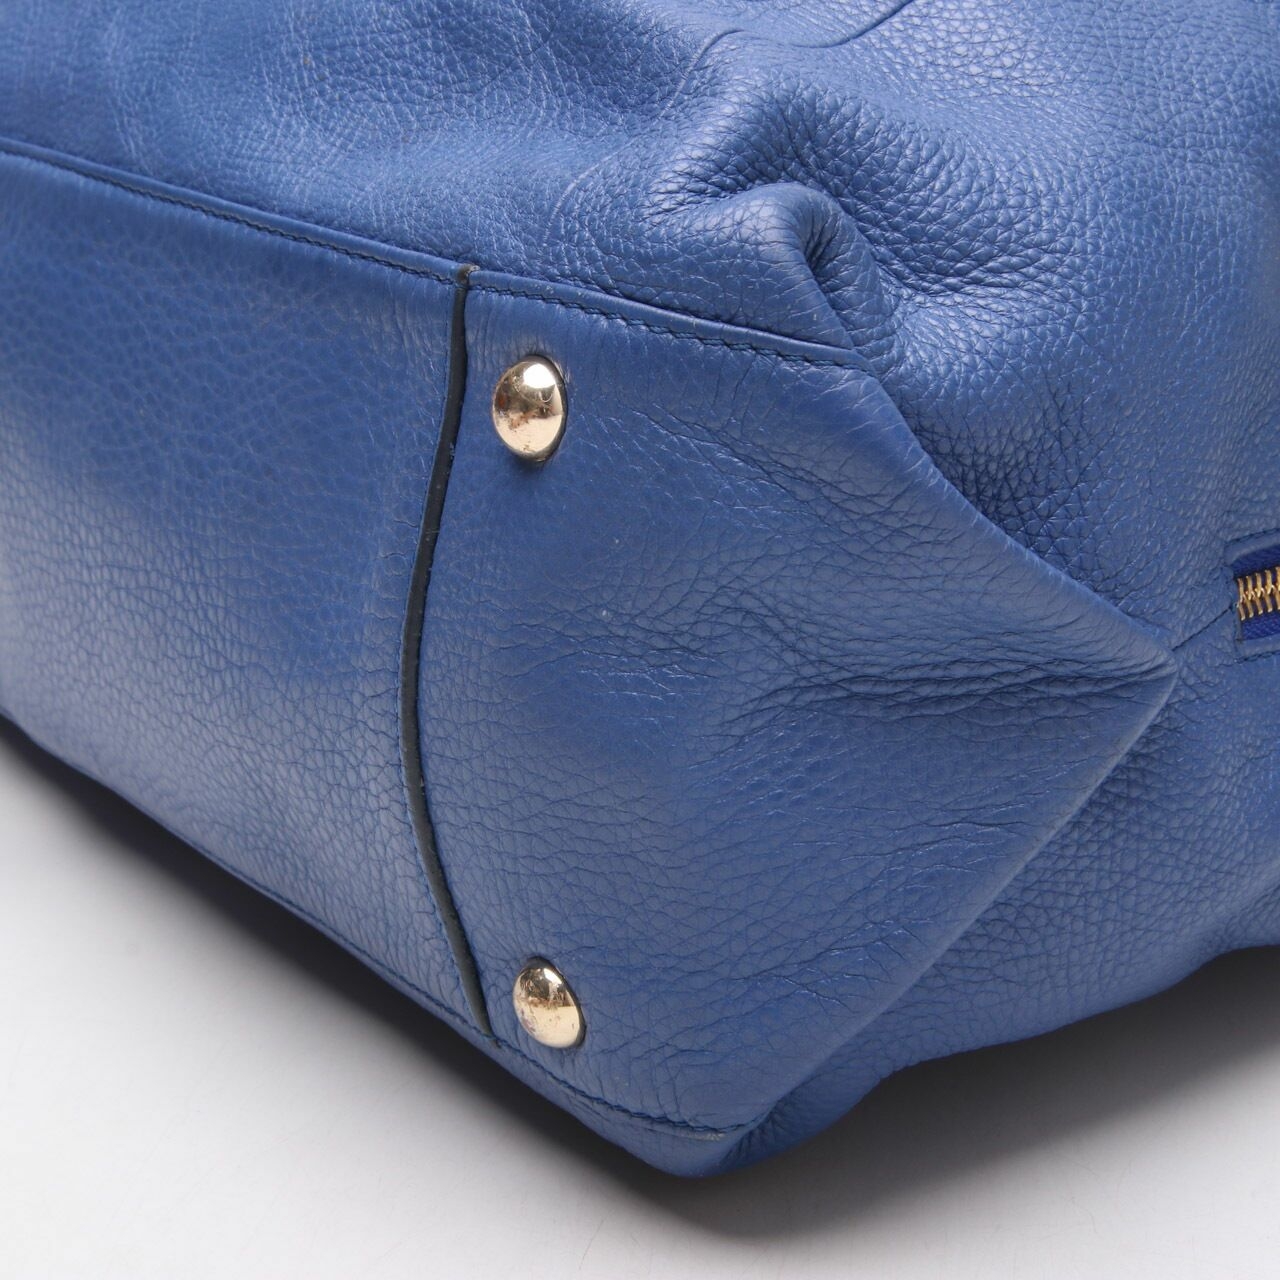 Furla Blue Hobo Shoulder Bag